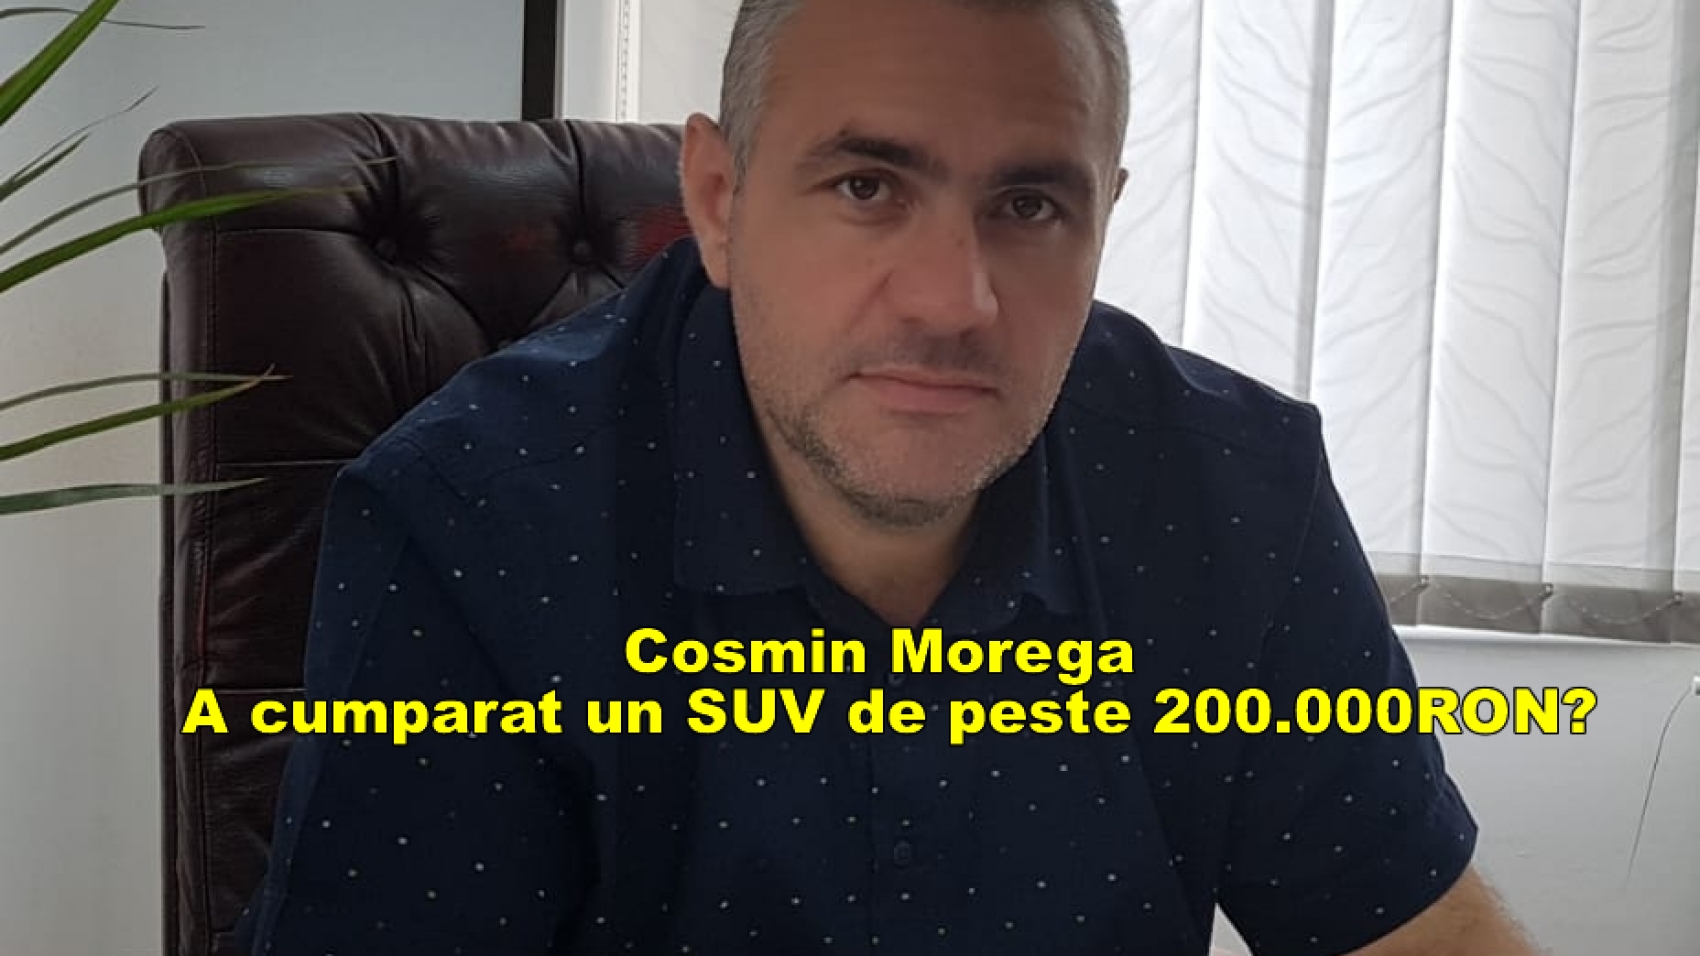 Cosmin Morega Jaguar